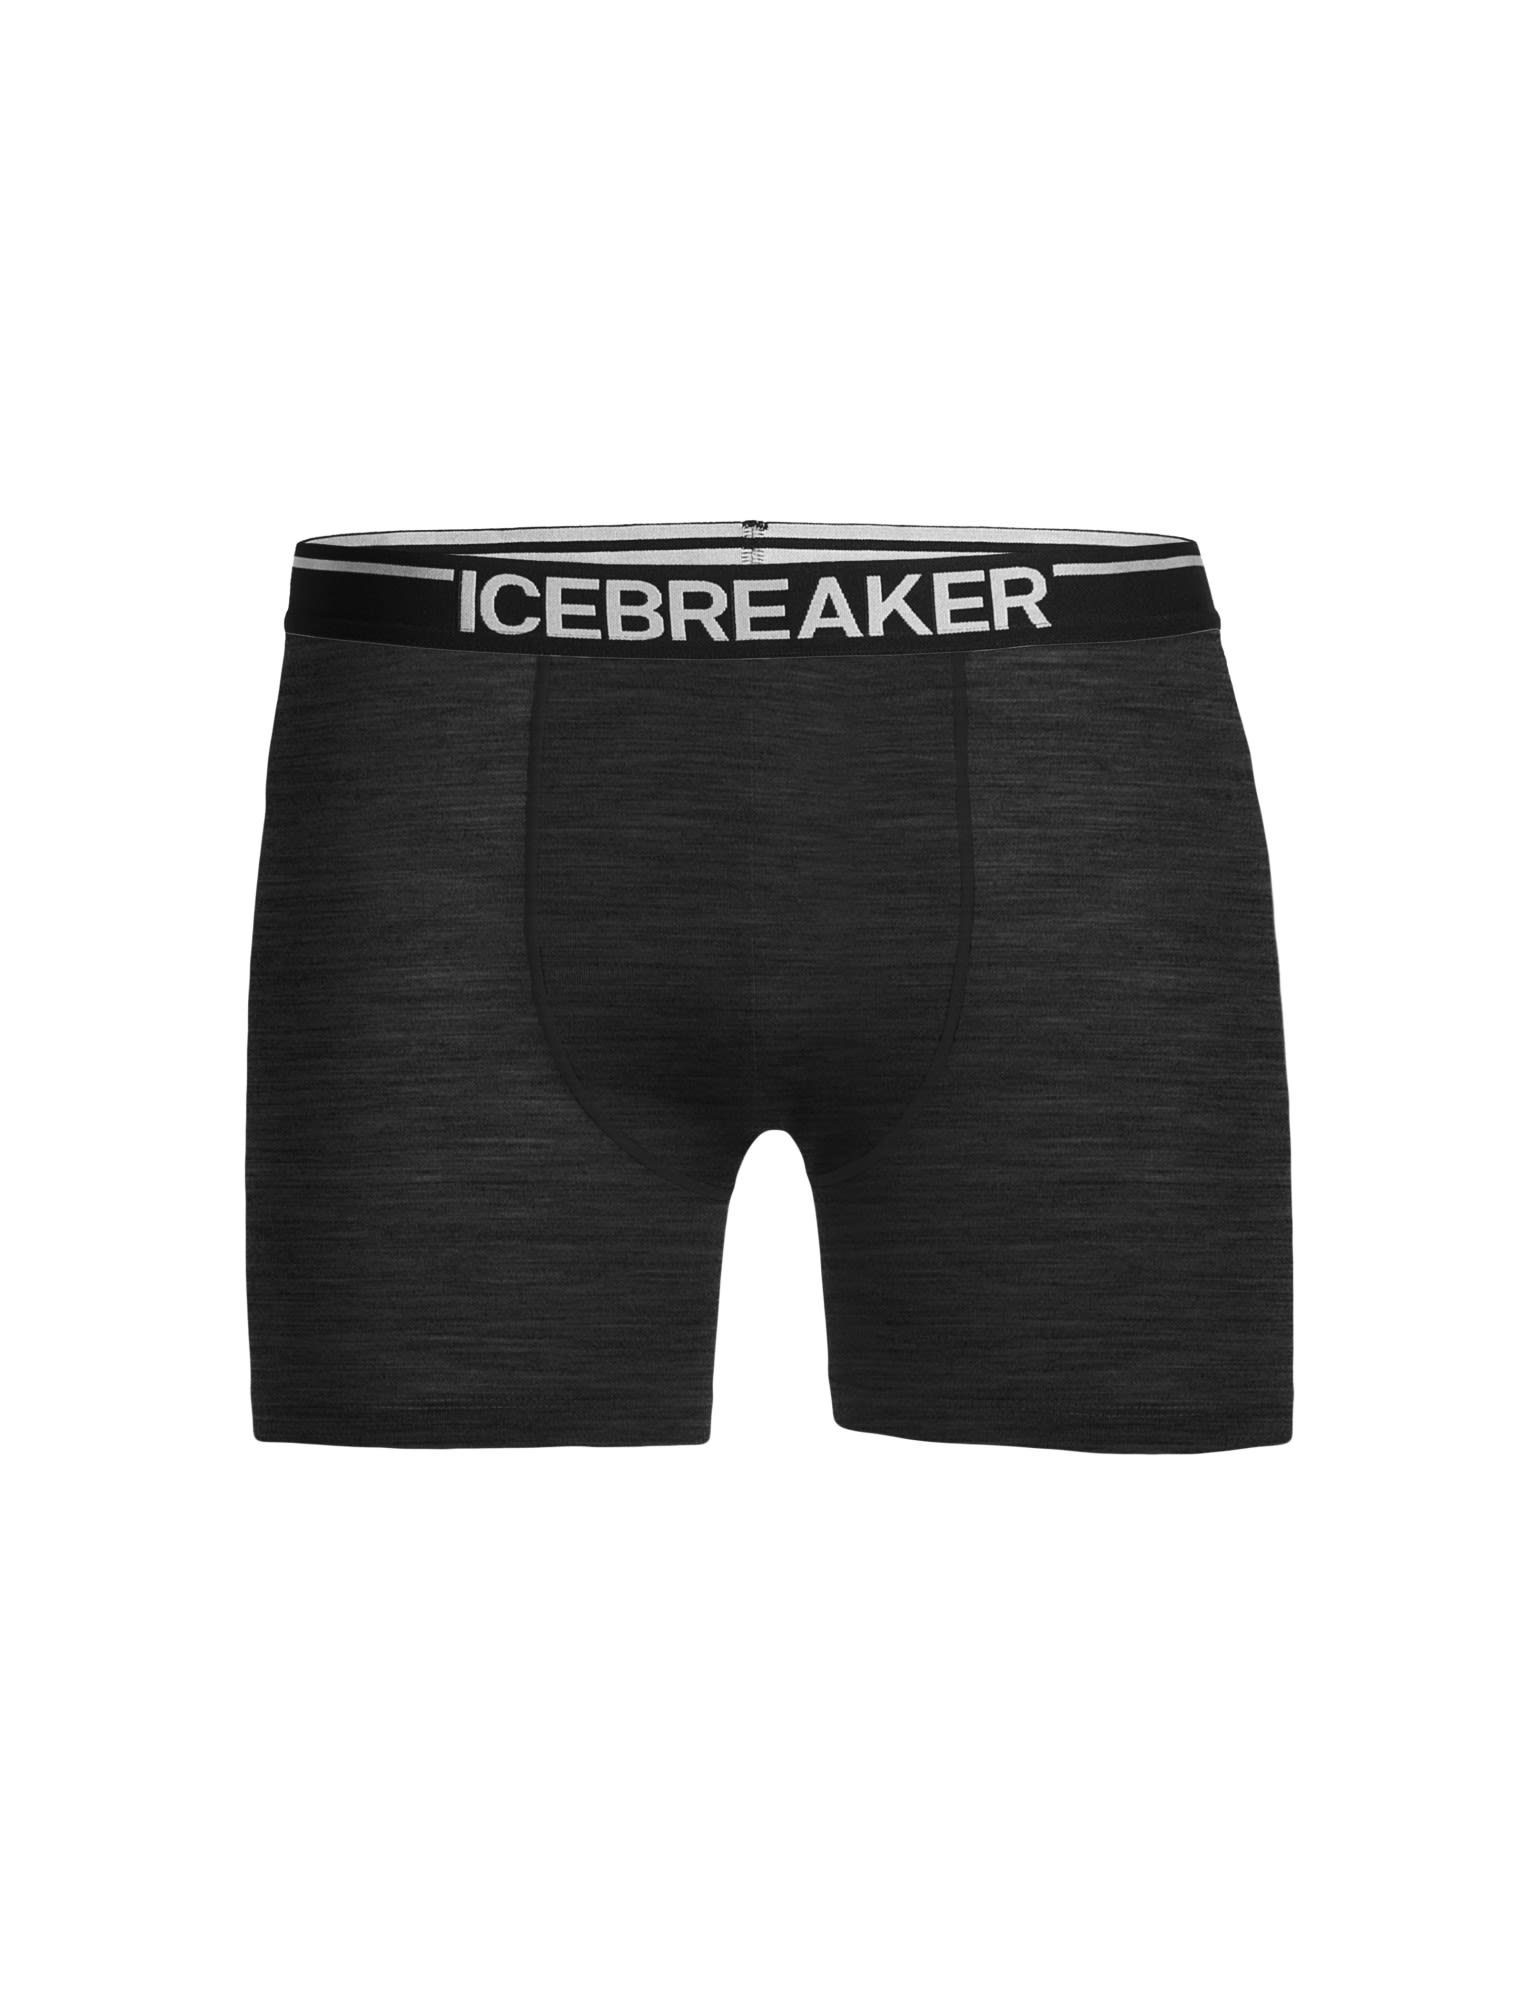 Lange Anatomica Icebreaker Icebreaker Herren M Kurze HTHR Boxers Grey Unterhose